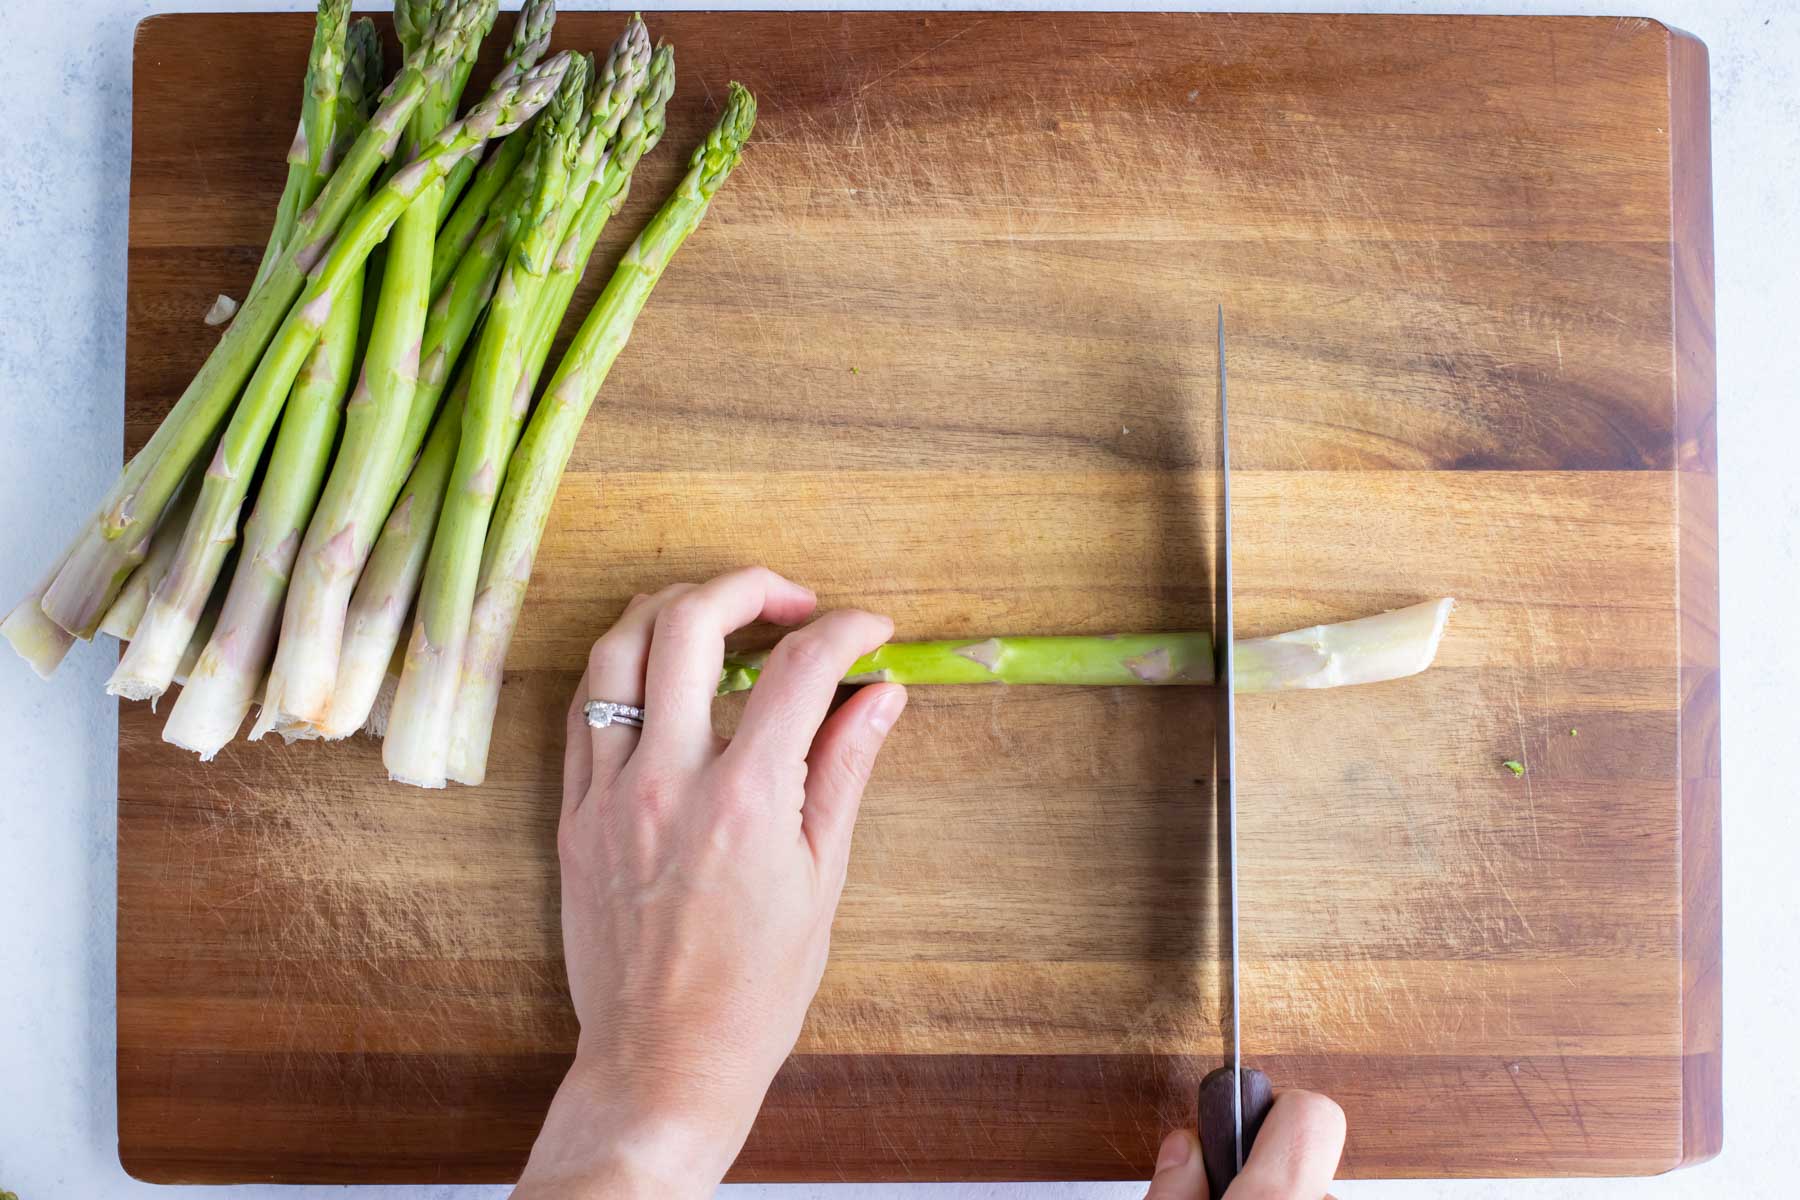 Asparagus stalks are cut with a knife.